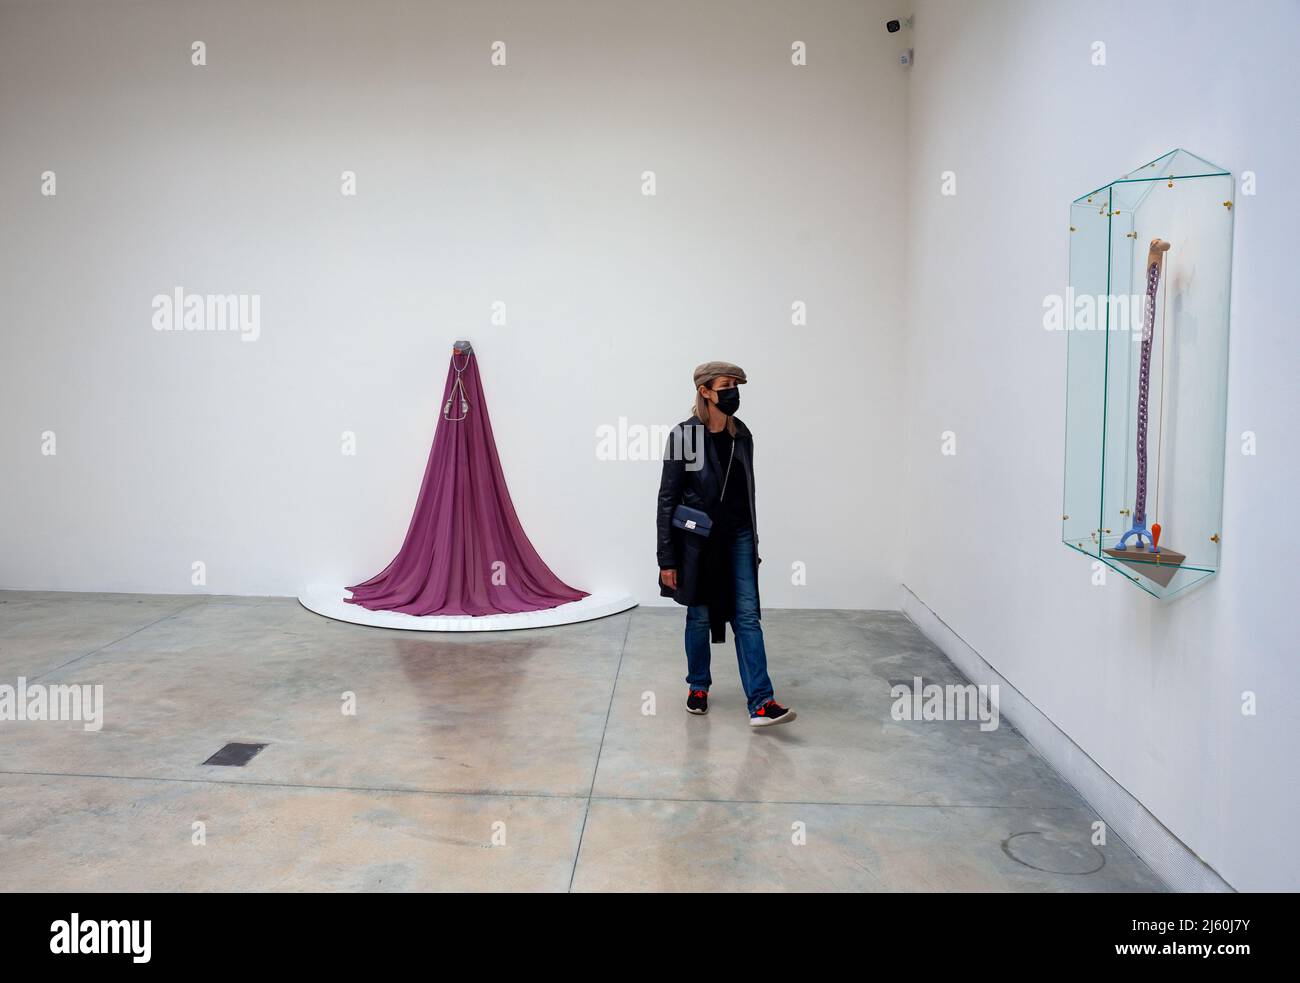 VENISE, ITALIE - avril 20 : Julia Phillips a voilé des œuvres d'art purificateur et stabilisateur lors de l'exposition internationale d'art de la biennale de Venise en avril 59th Banque D'Images